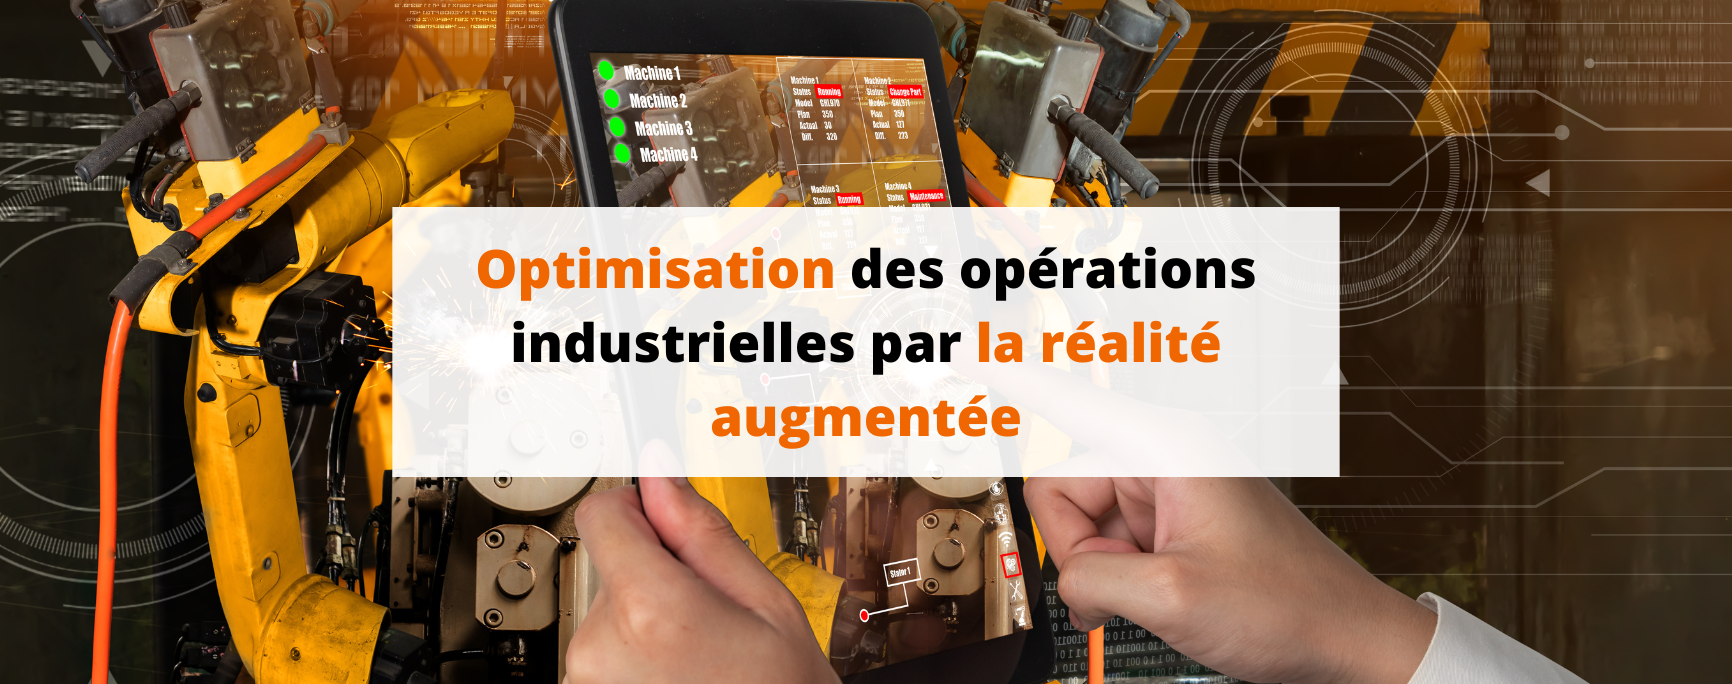 Optimisation des opérations industrielles par la réalité augmentée